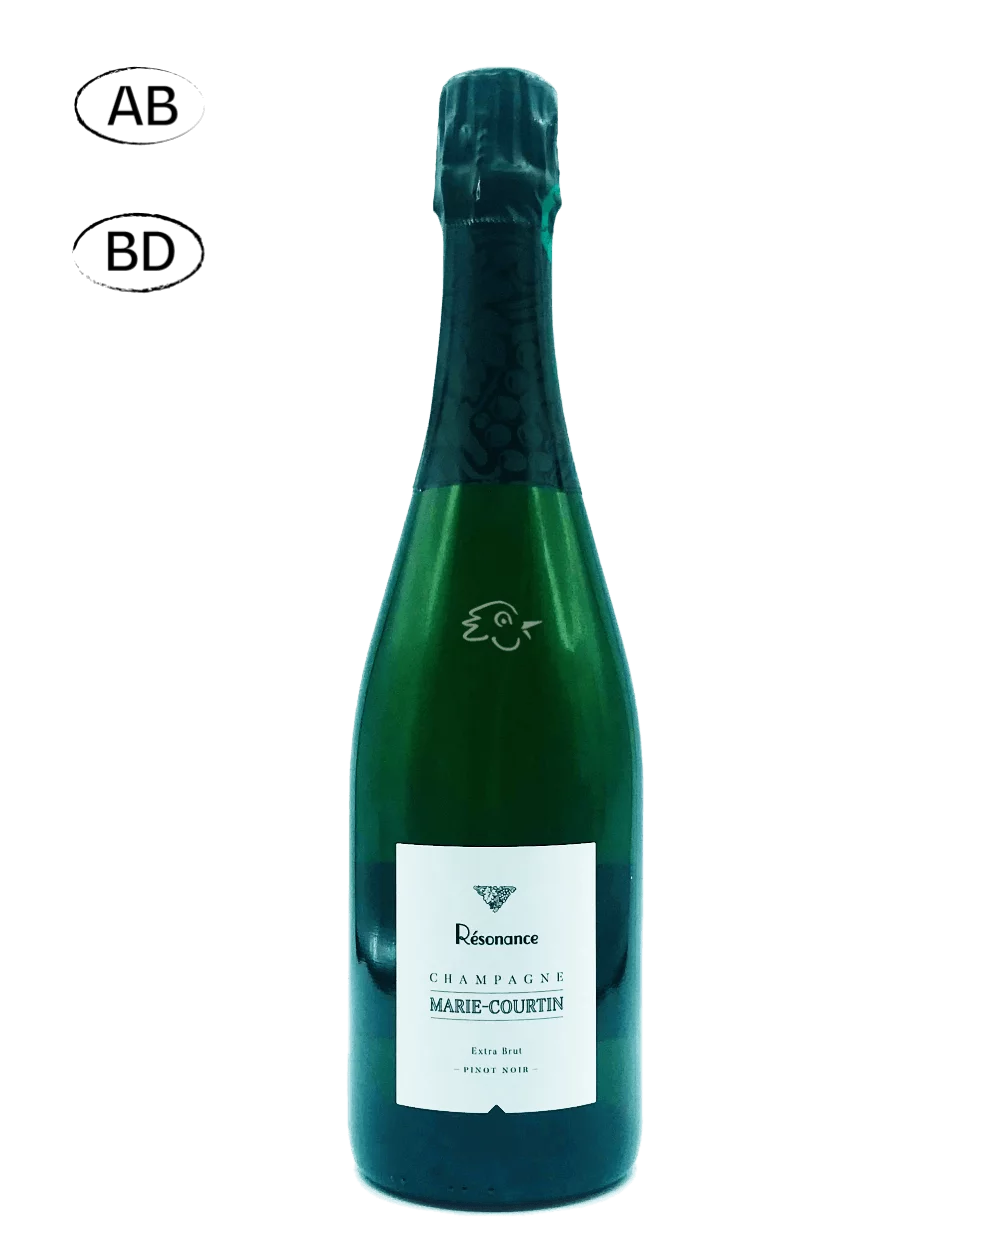 Champagne Marie Courtin - Résonance 2018 - Avintures